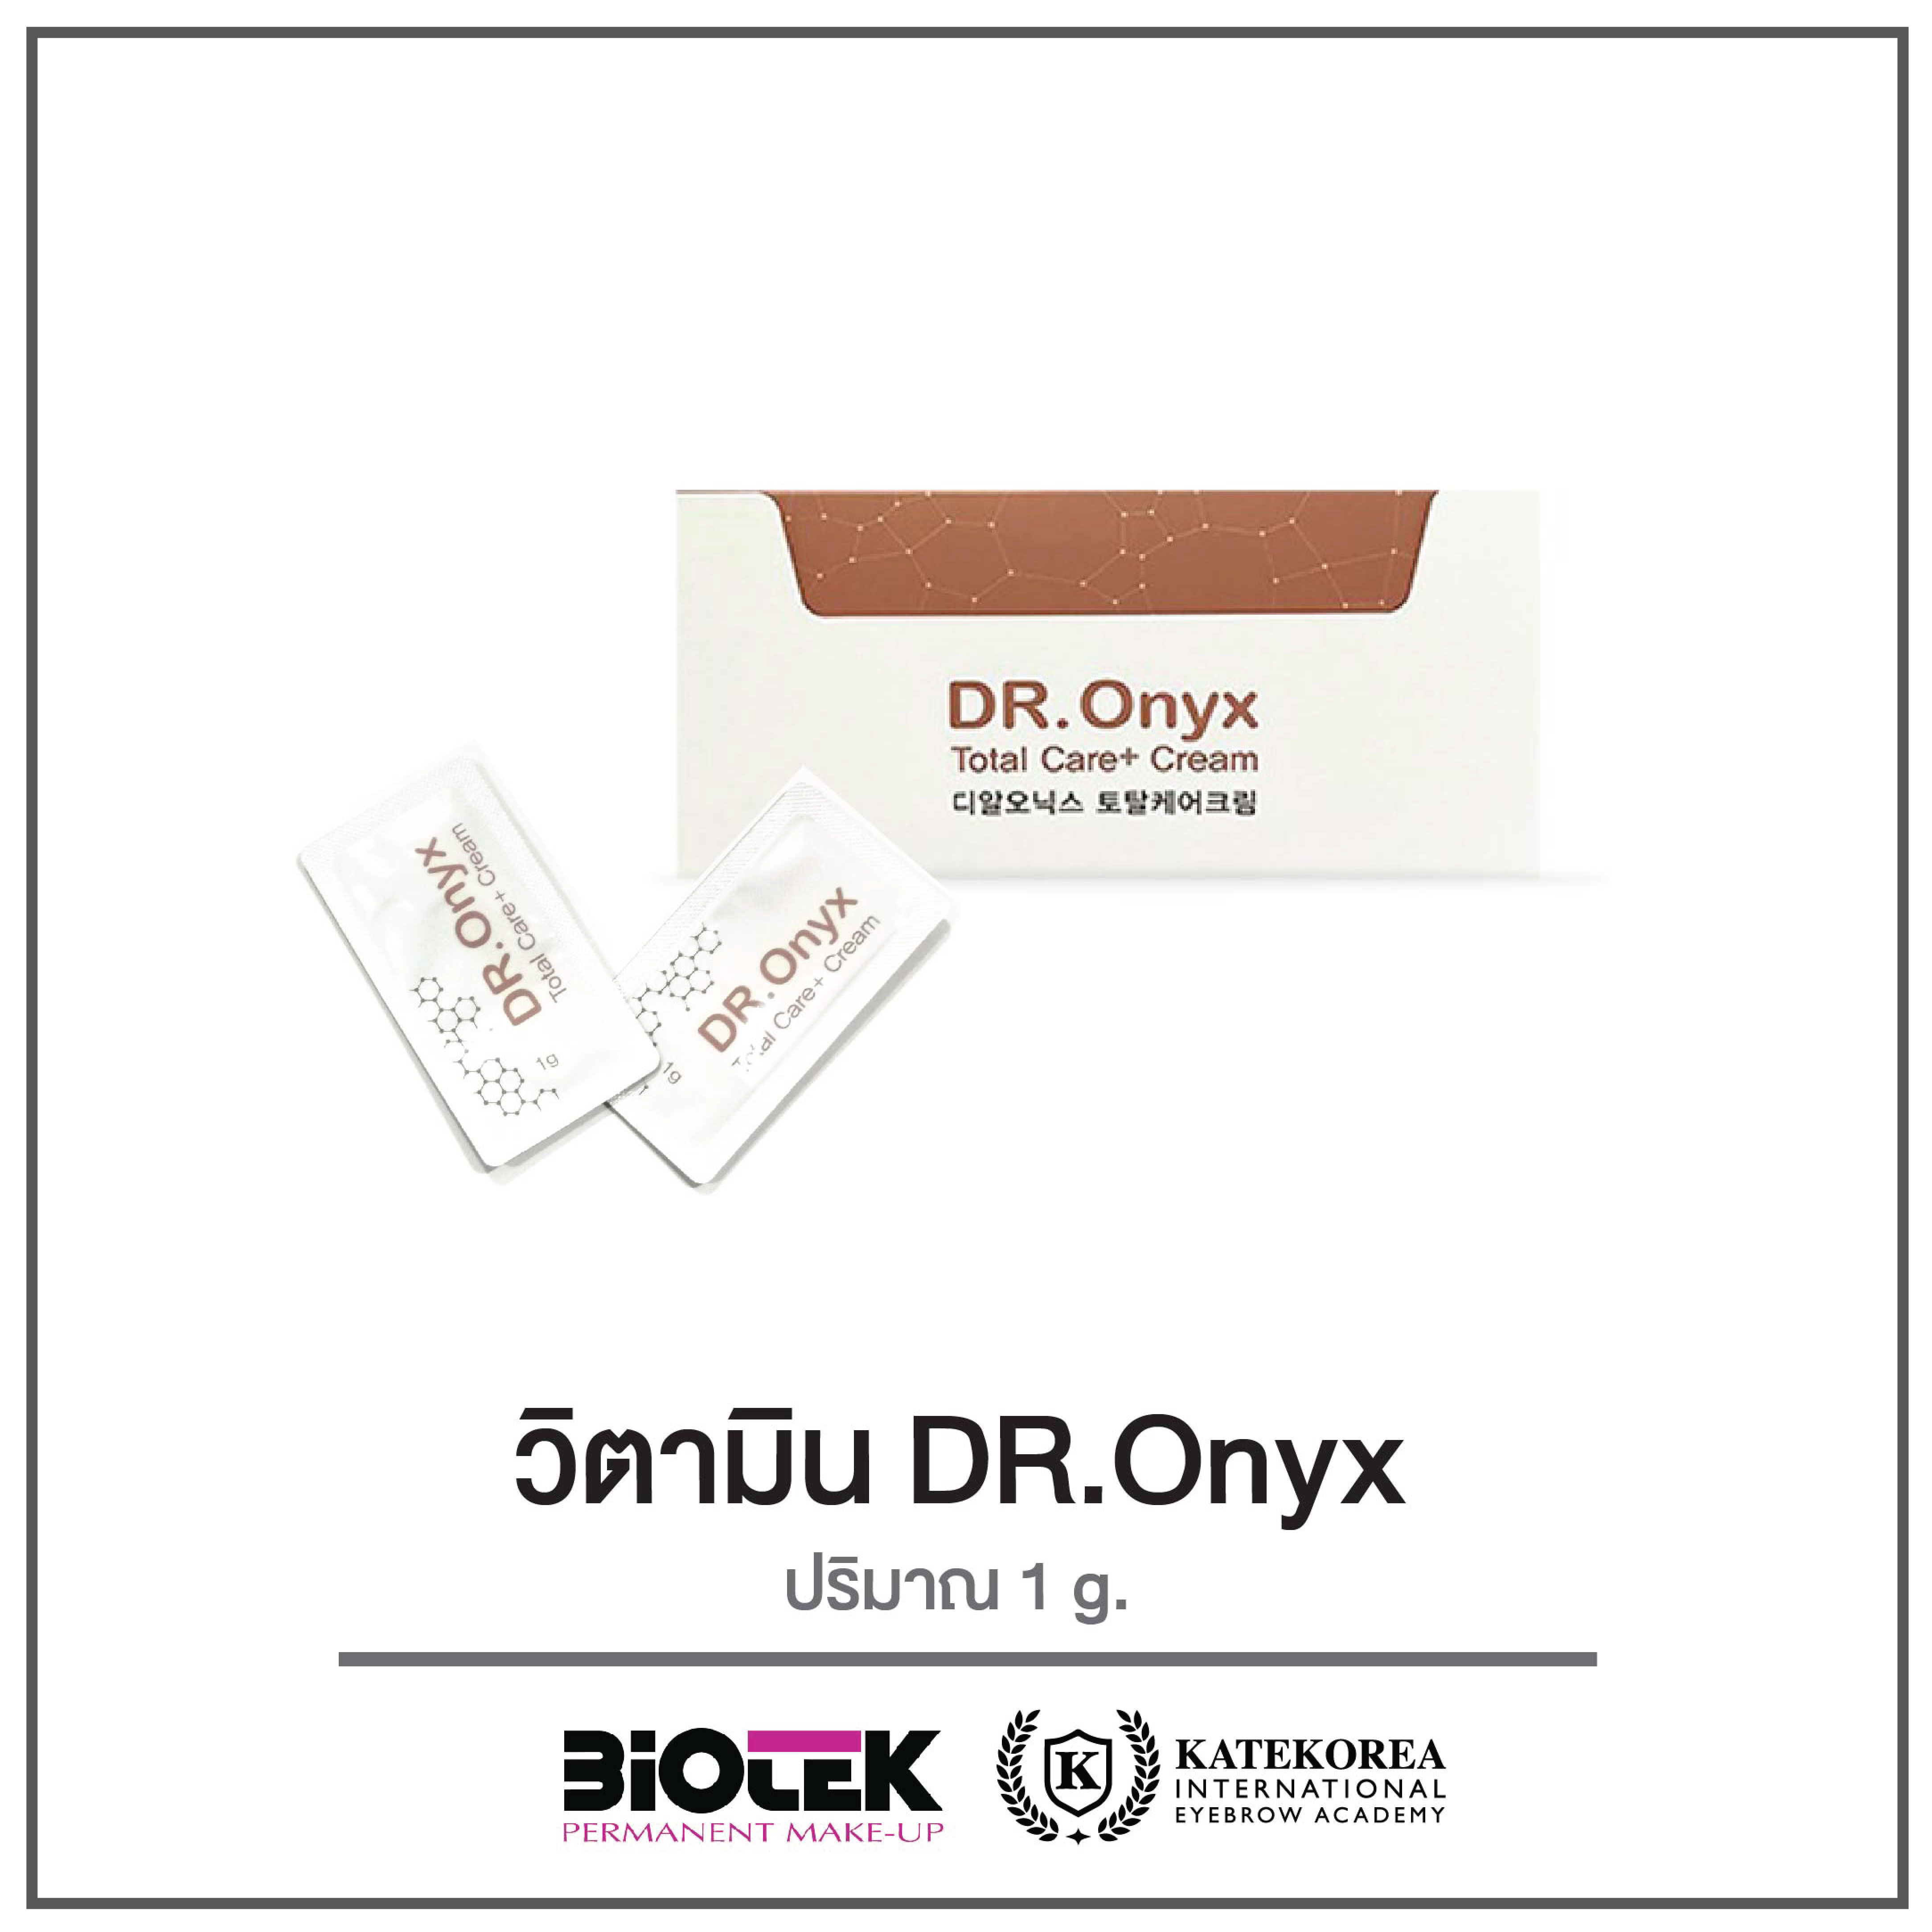 วิตามินบำรุงหลังสัก DR.Onyx